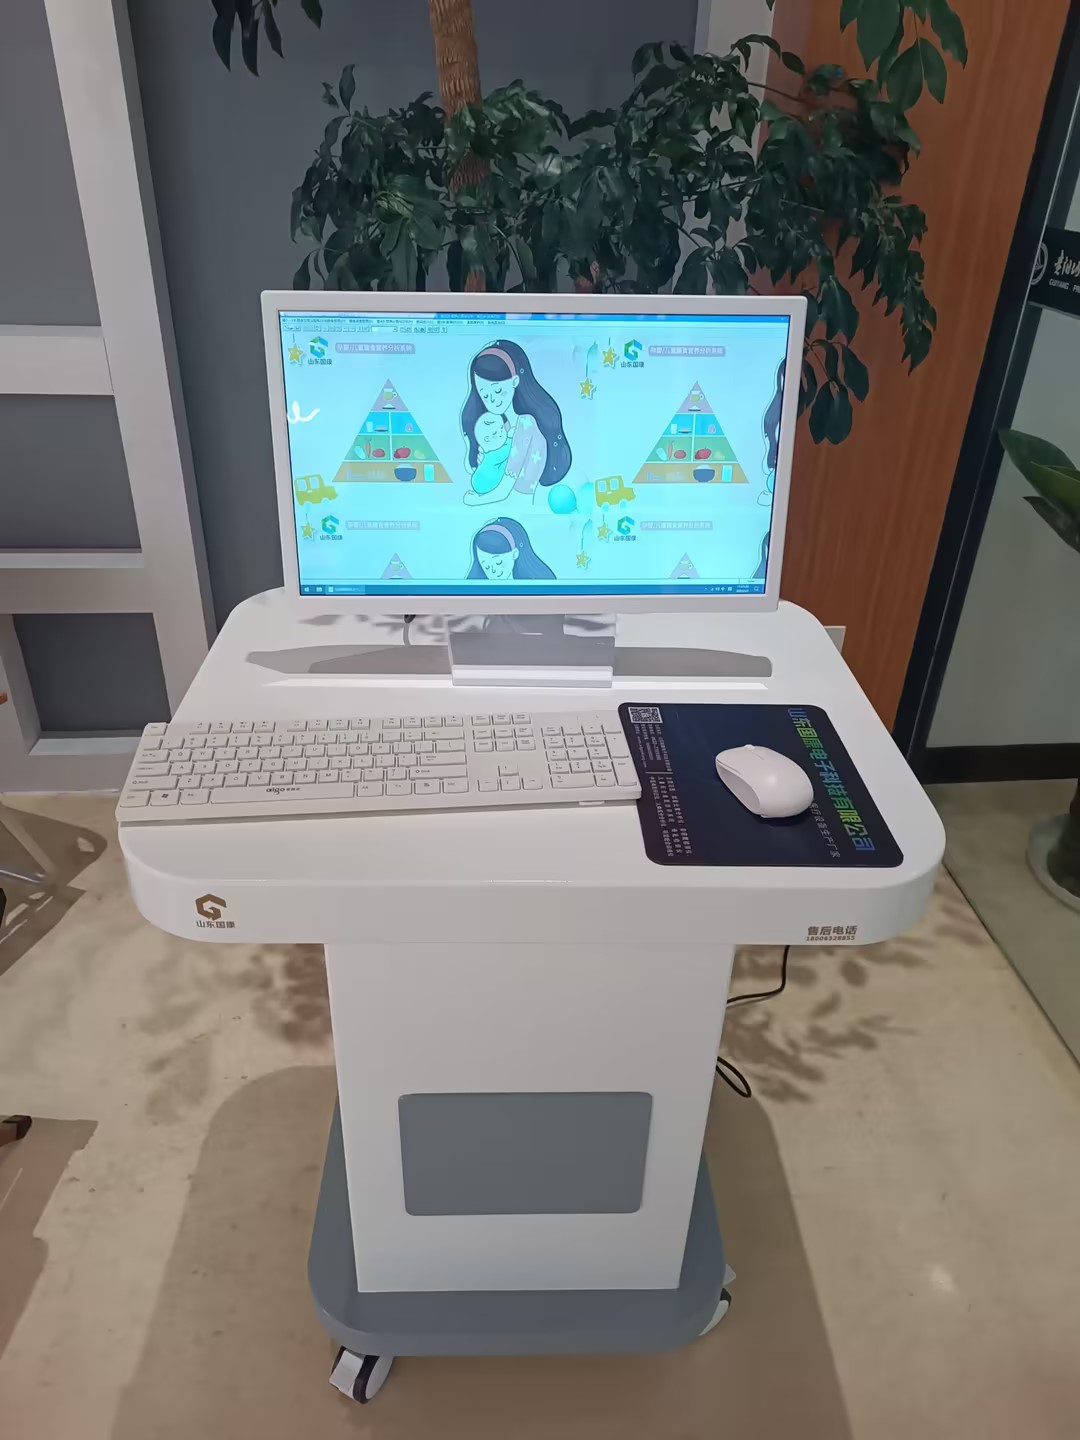 儿童膳食营养分析系统在贵州贵阳清镇市第一人民医院完成装机